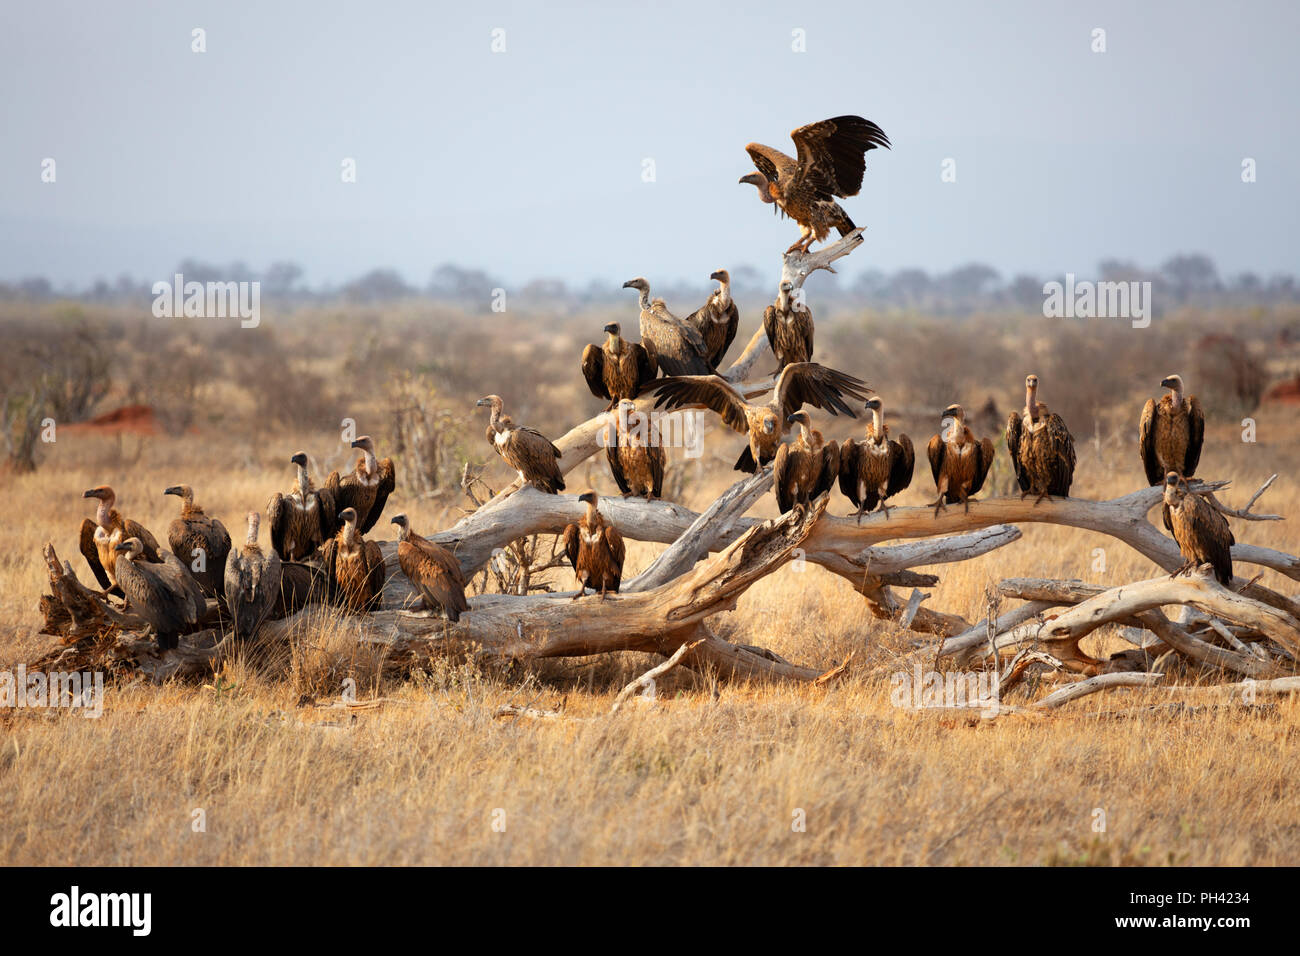 Parco nazionale orientale di tsavo, Kenya, Africa - un comitato o un gregge di avvoltoi appollaiato su un albero morto il ramo nel tardo pomeriggio sun Foto Stock